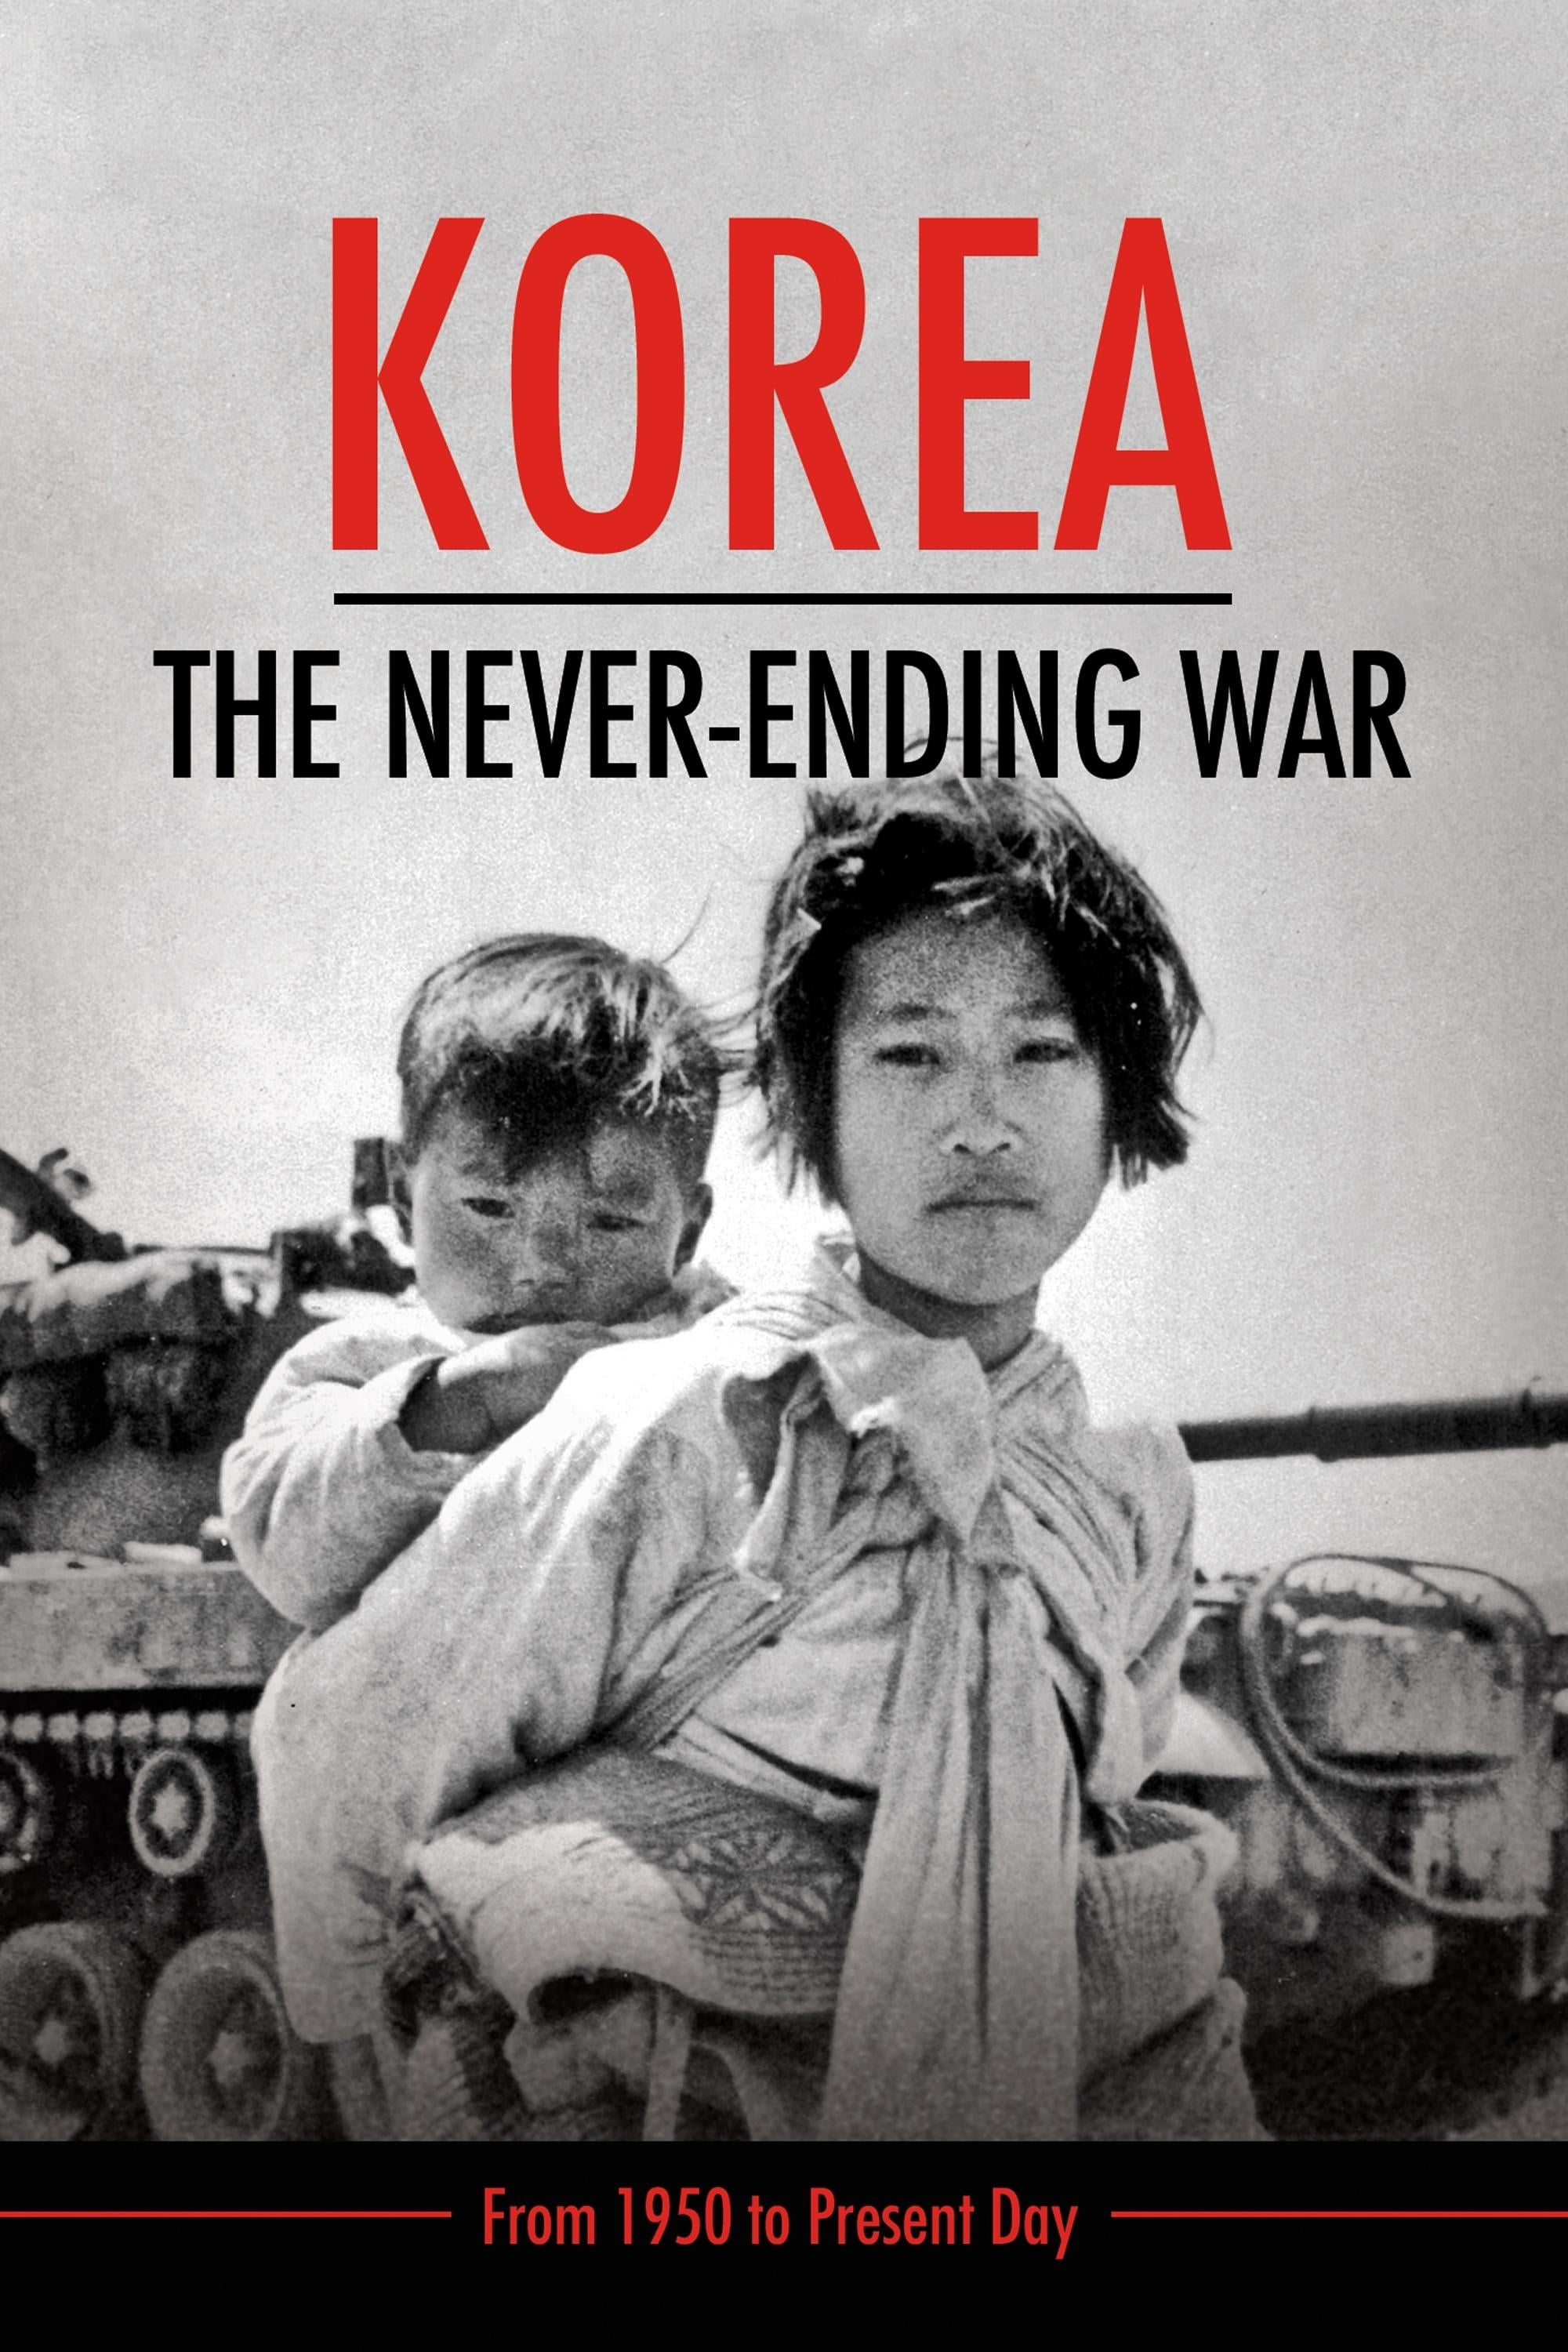 Korea: The Never-Ending War film